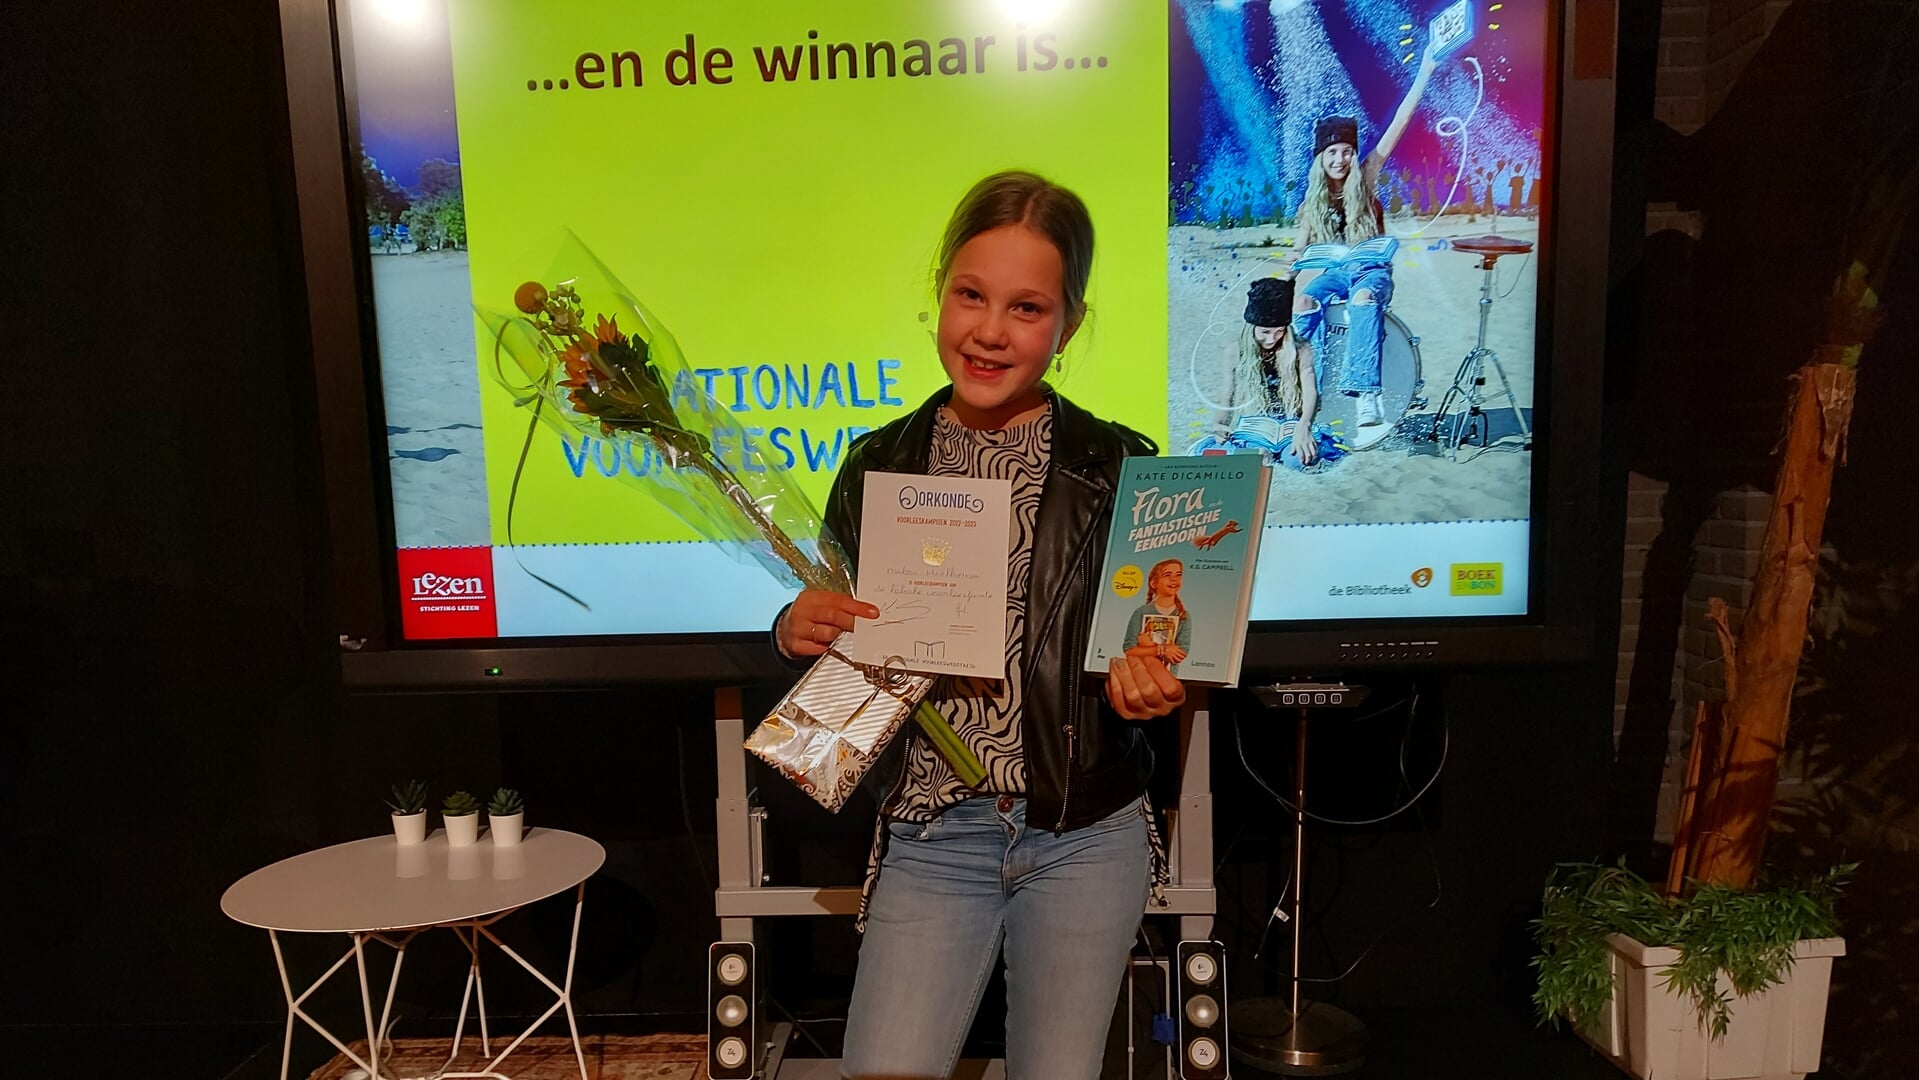 Milou Hielkema wint de eerste lokale ronde van de Nationale Voorleeswedstrijd. (Foto: Corine Vaneker)